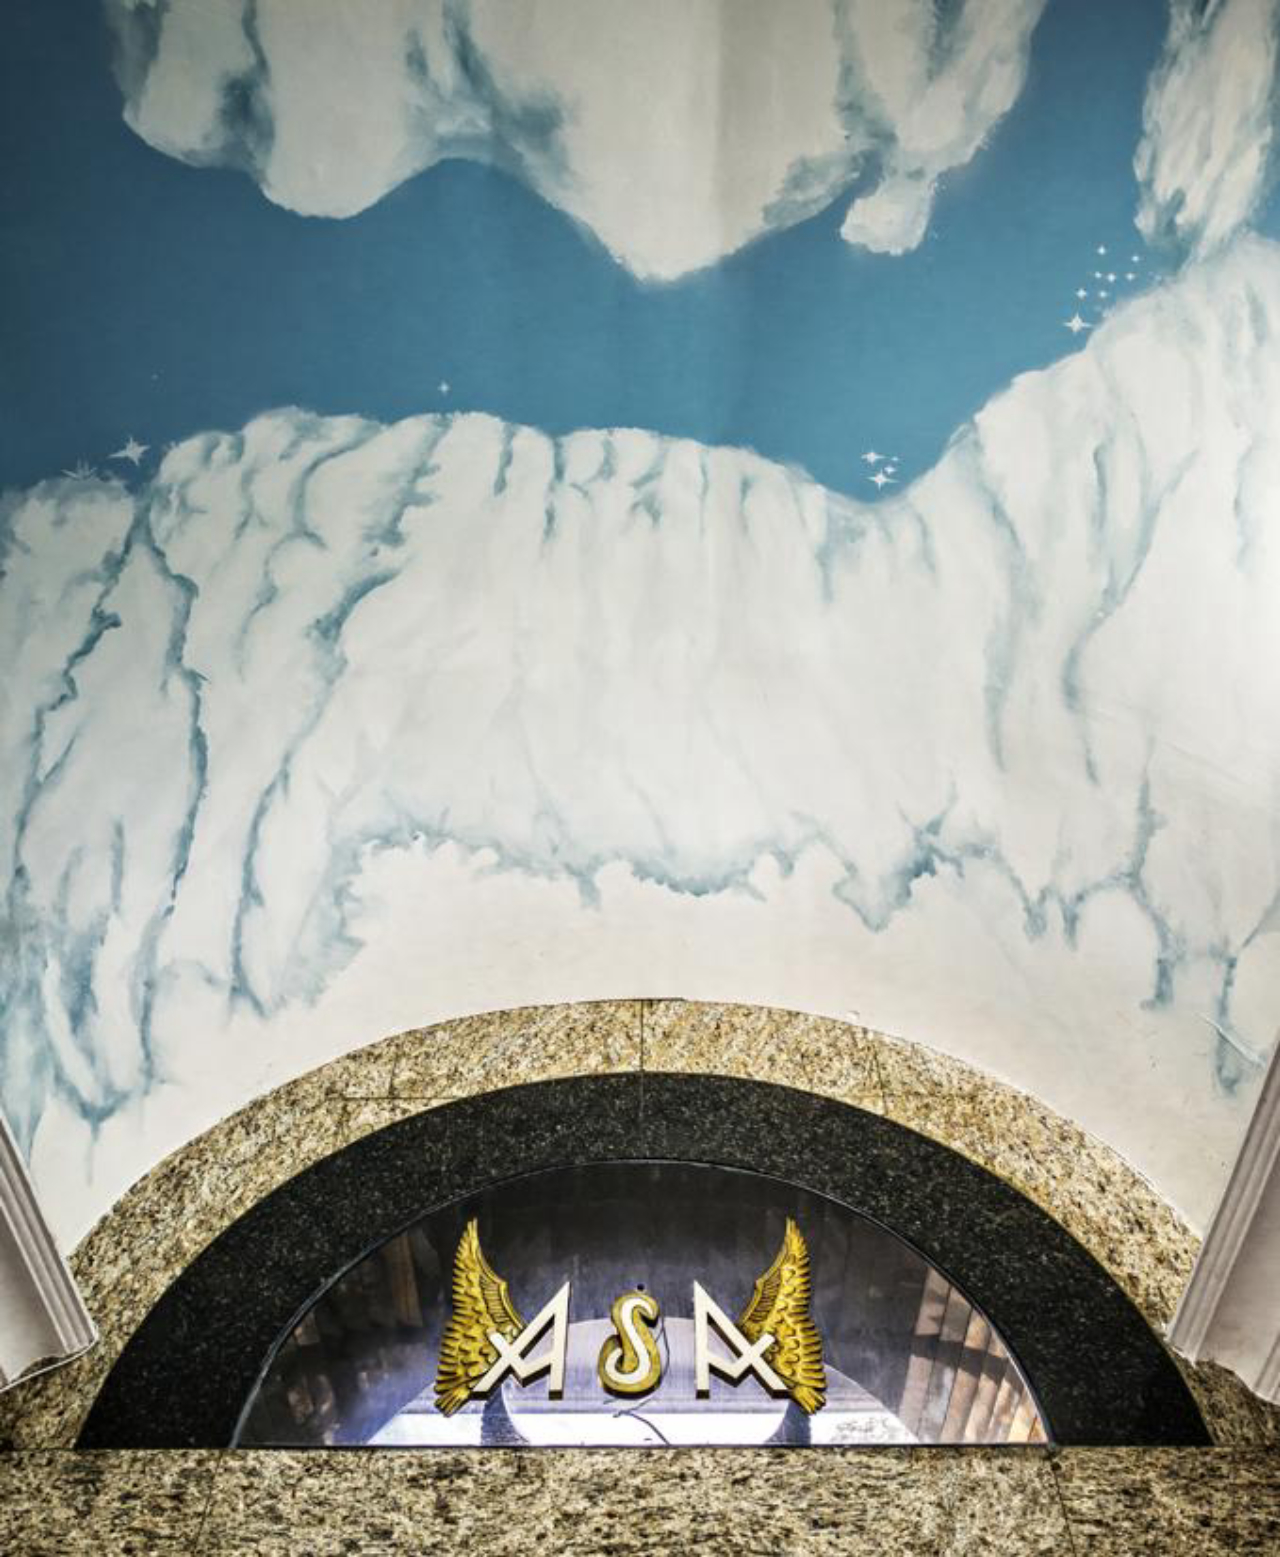 A pintura do teto imita o céu e brinca com o nome do edifício. As paredes são revestidas com granito, formando detalhes geométricos